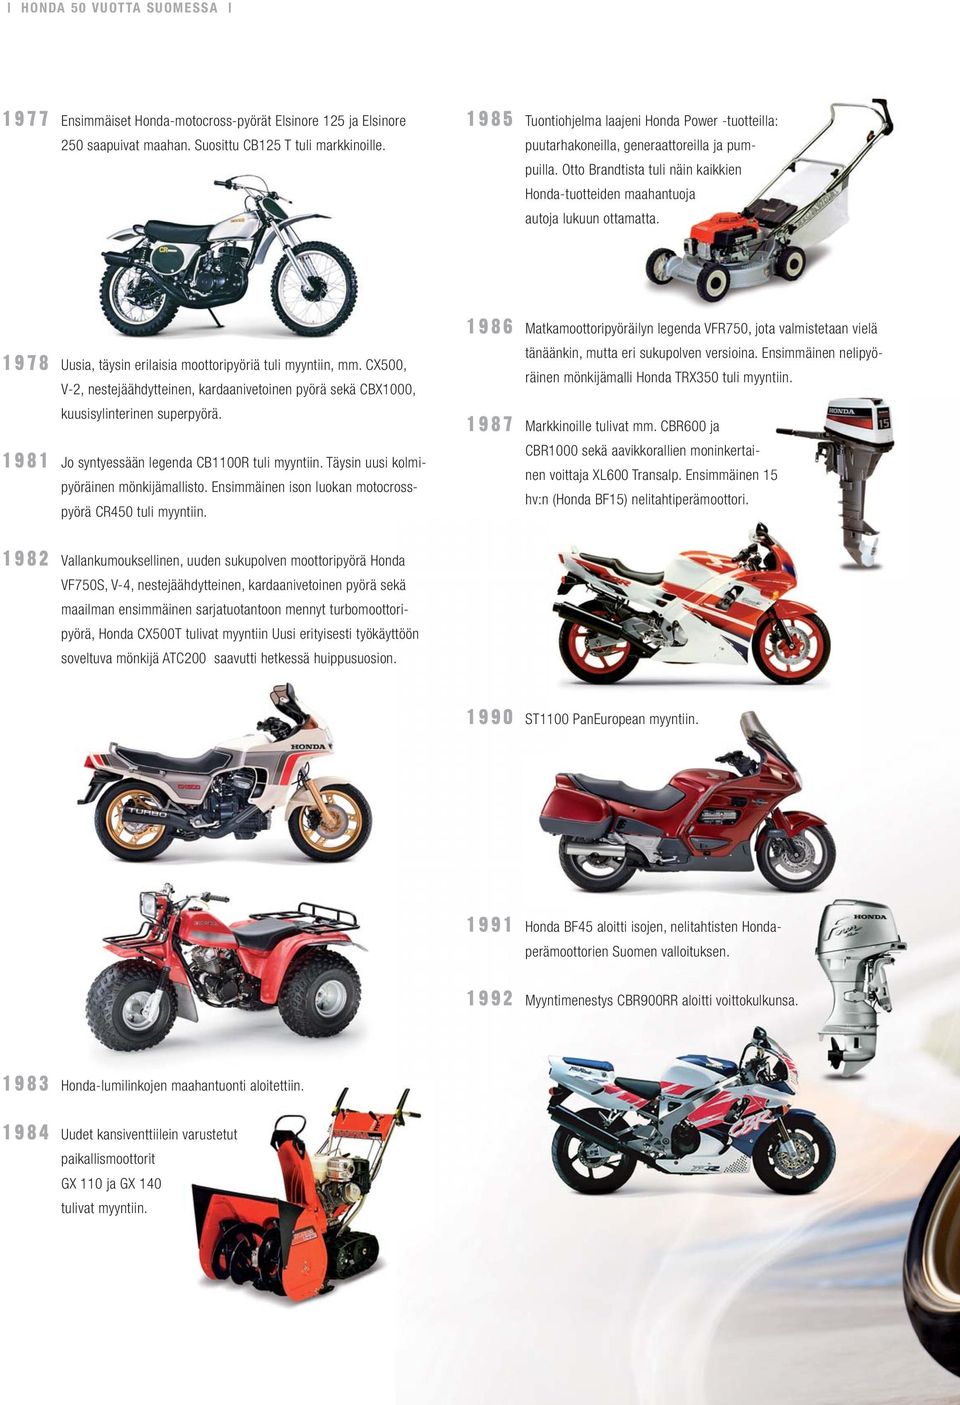 1978 Uusia, täysin erilaisia moottoripyöriä tuli myyntiin, mm. CX500, V-2, nestejäähdytteinen, kardaanivetoinen pyörä sekä CBX1000, kuusisylinterinen superpyörä.